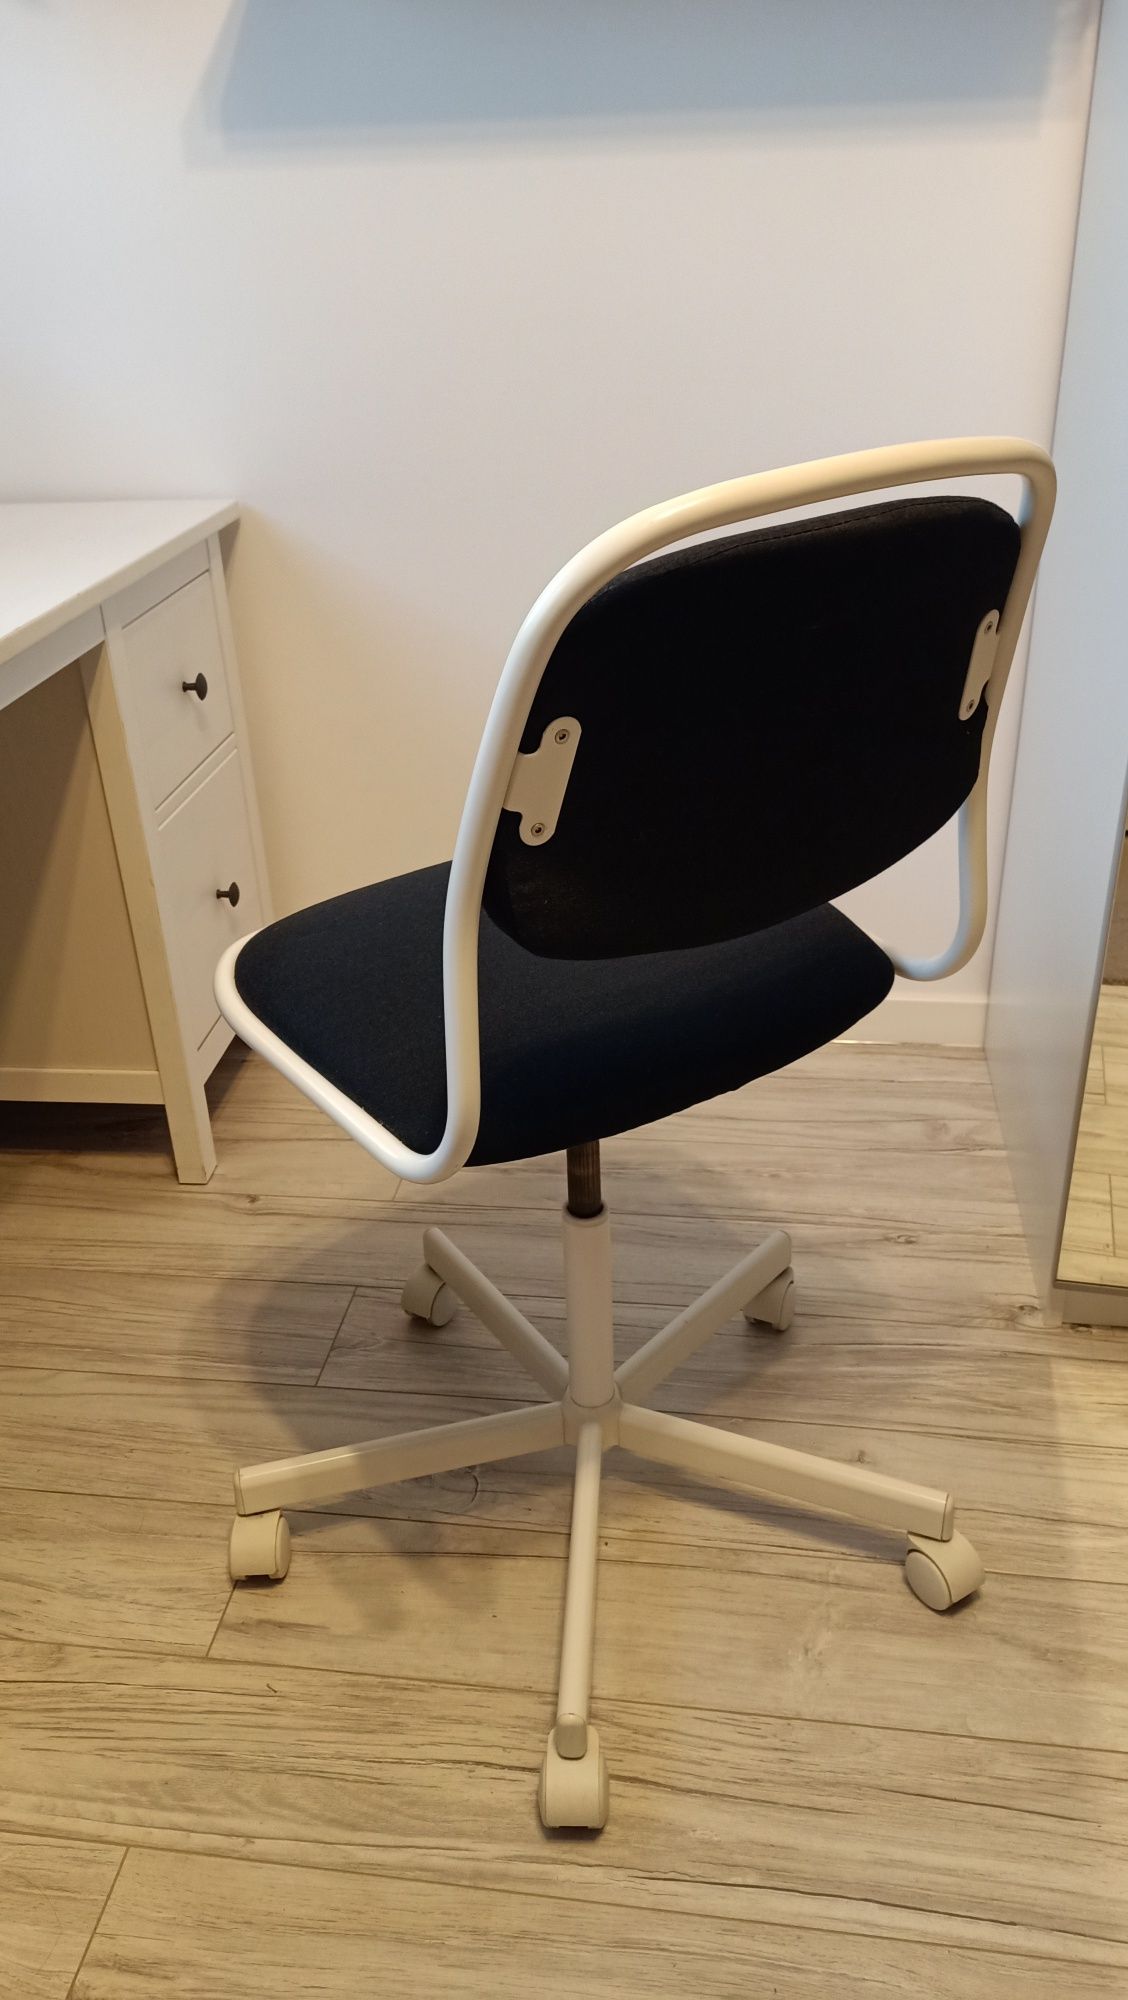 Krzesło obrotowe biało czarne